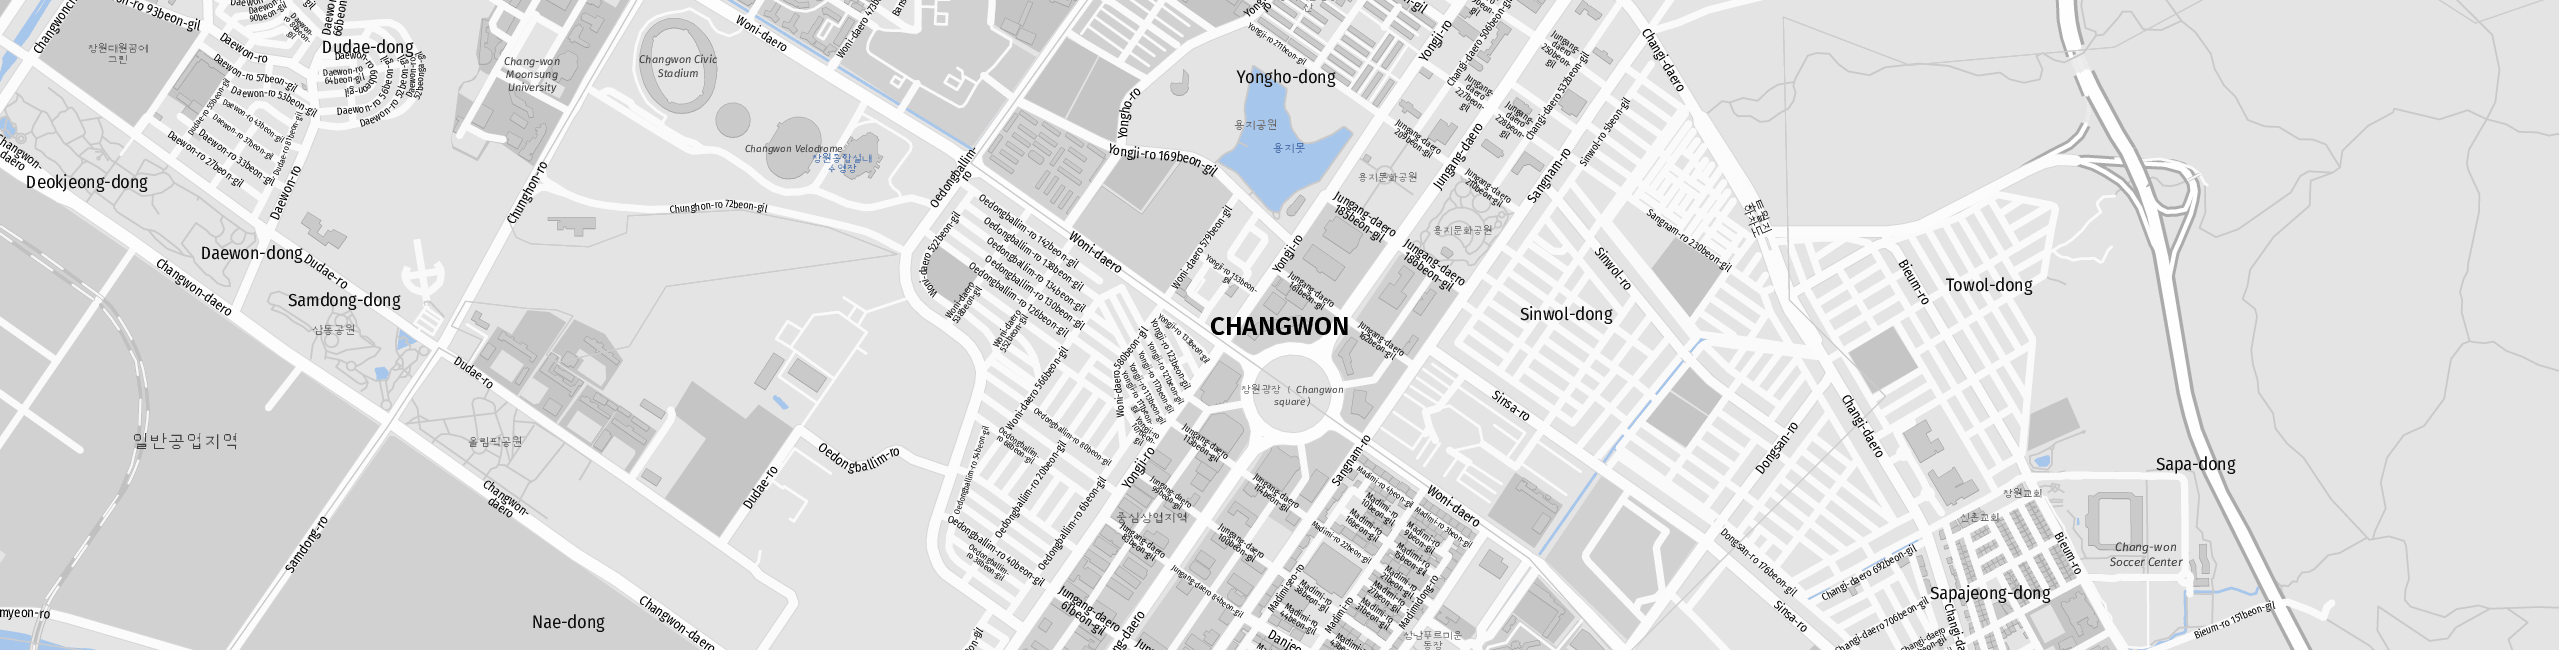 Stadtplan Changwon zum Downloaden.